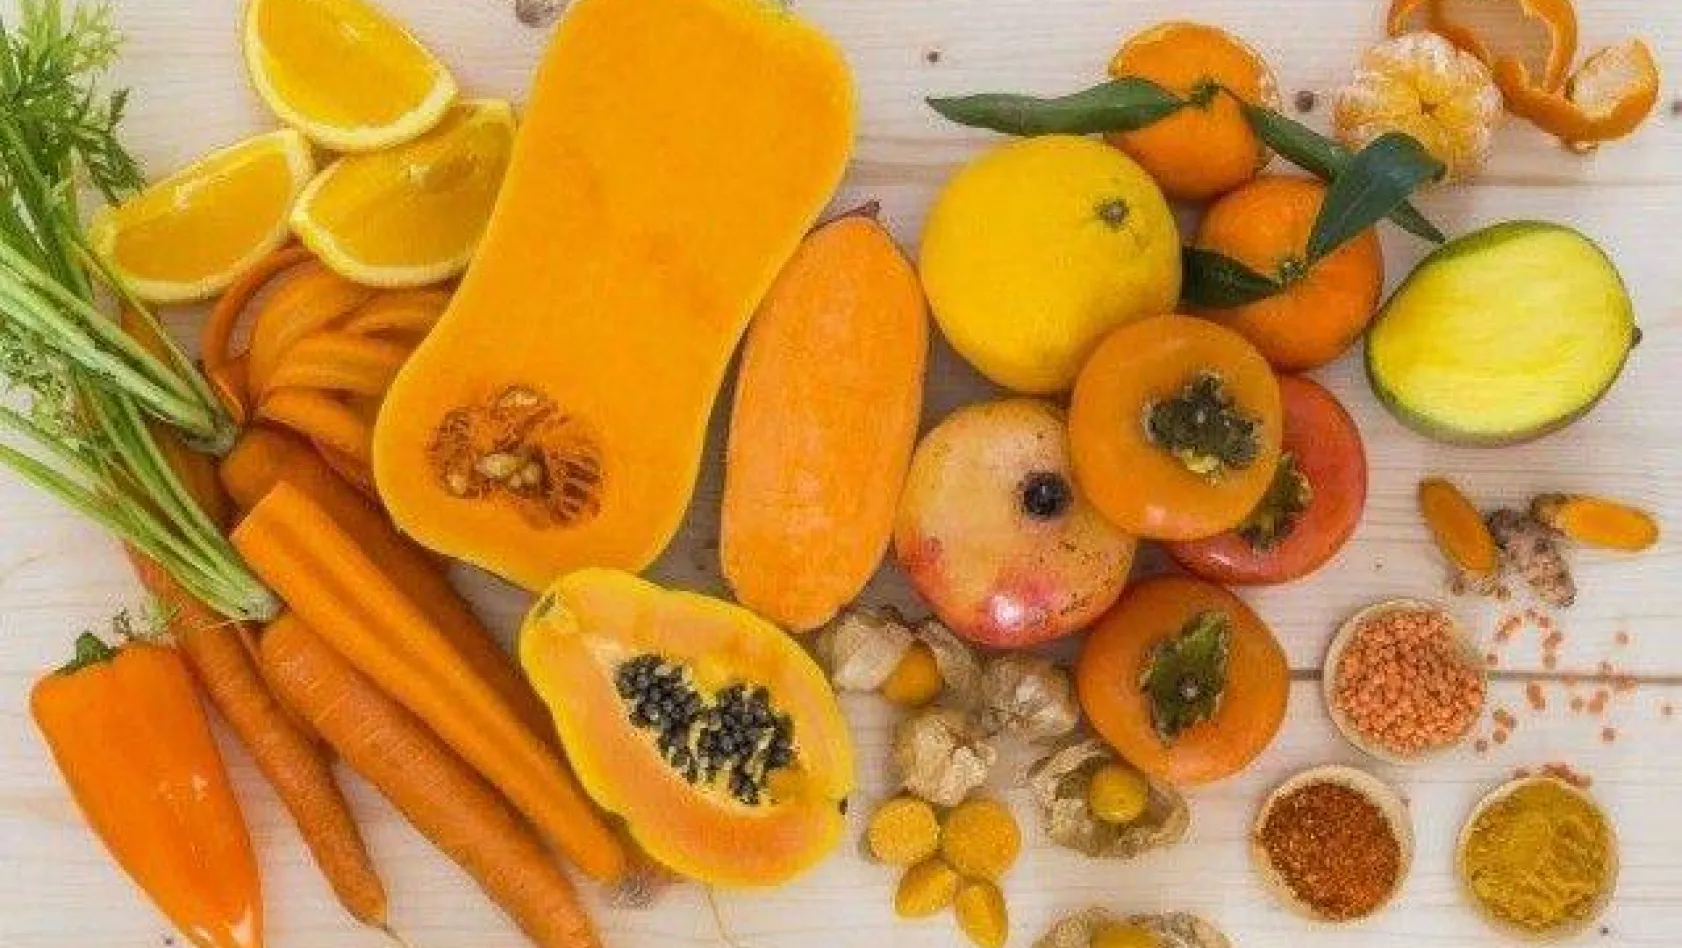 Hangi renk besin neye iyi geliyor? İşte renklerine göre besinlerin yararları!